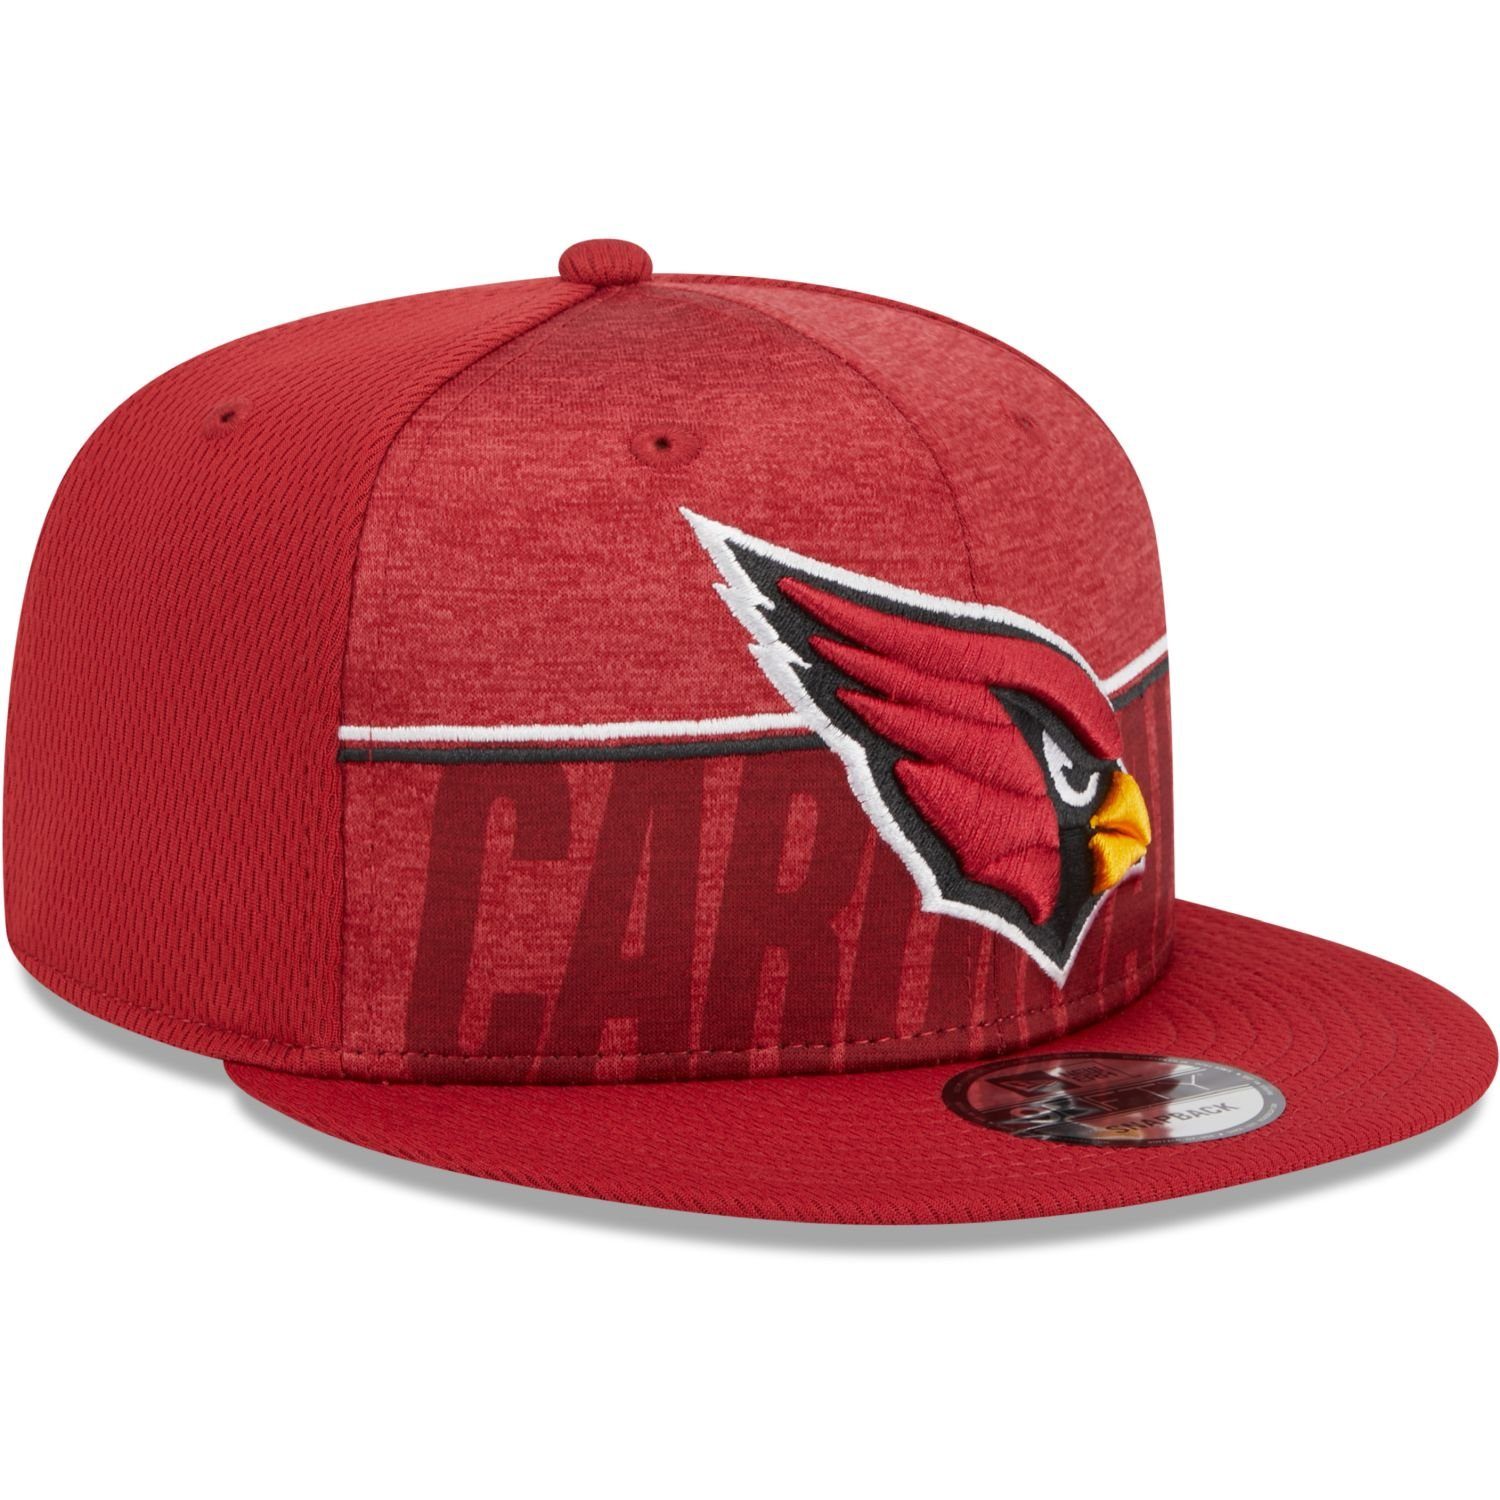 New Era Snapback Cap Arizona TRAINING 9FIFTY Cardinals